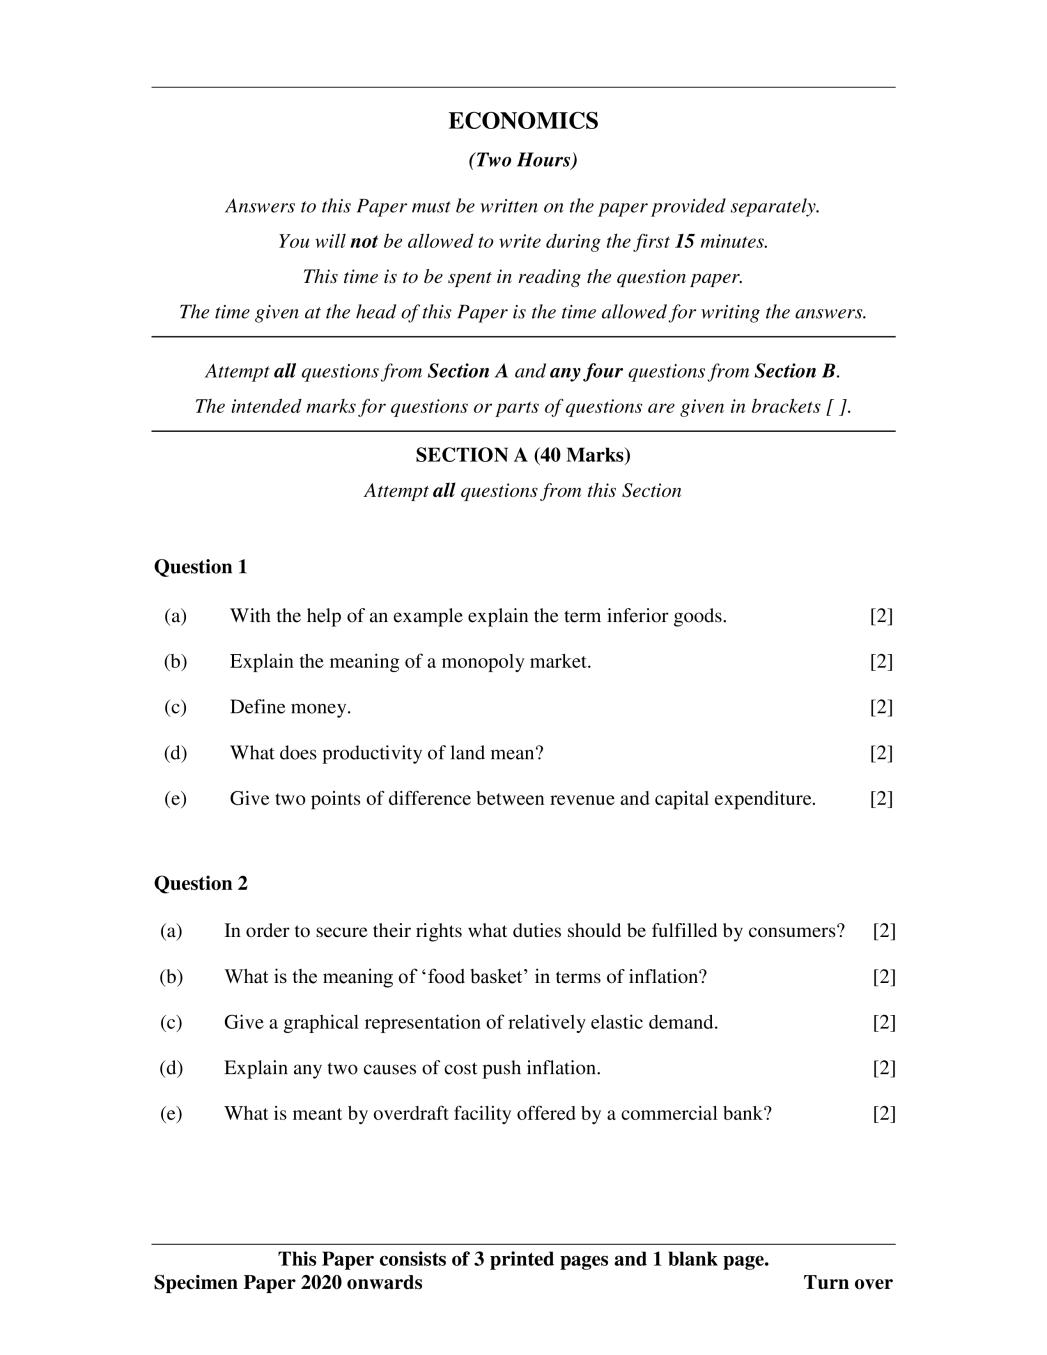 ICSE Class 10 Specimen Paper 2020 for Economics  - Page 1